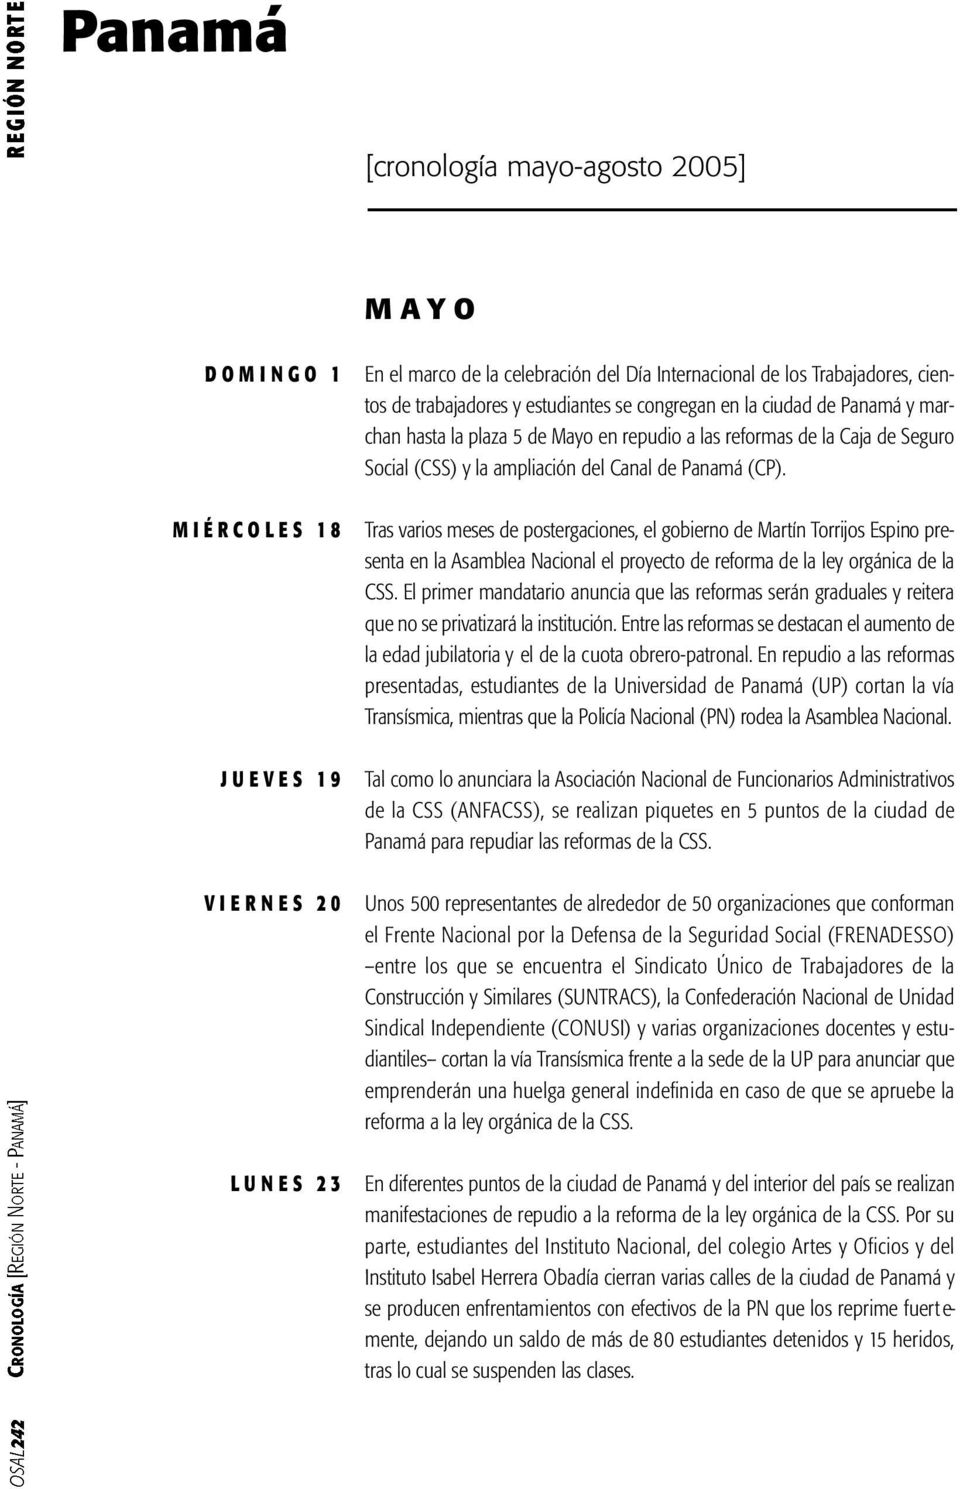 del Canal de Panamá (CP). Tras varios meses de postergaciones, el gobierno de Martín Torrijos Espino presenta en la Asamblea Nacional el proyecto de reforma de la ley orgánica de la CSS.